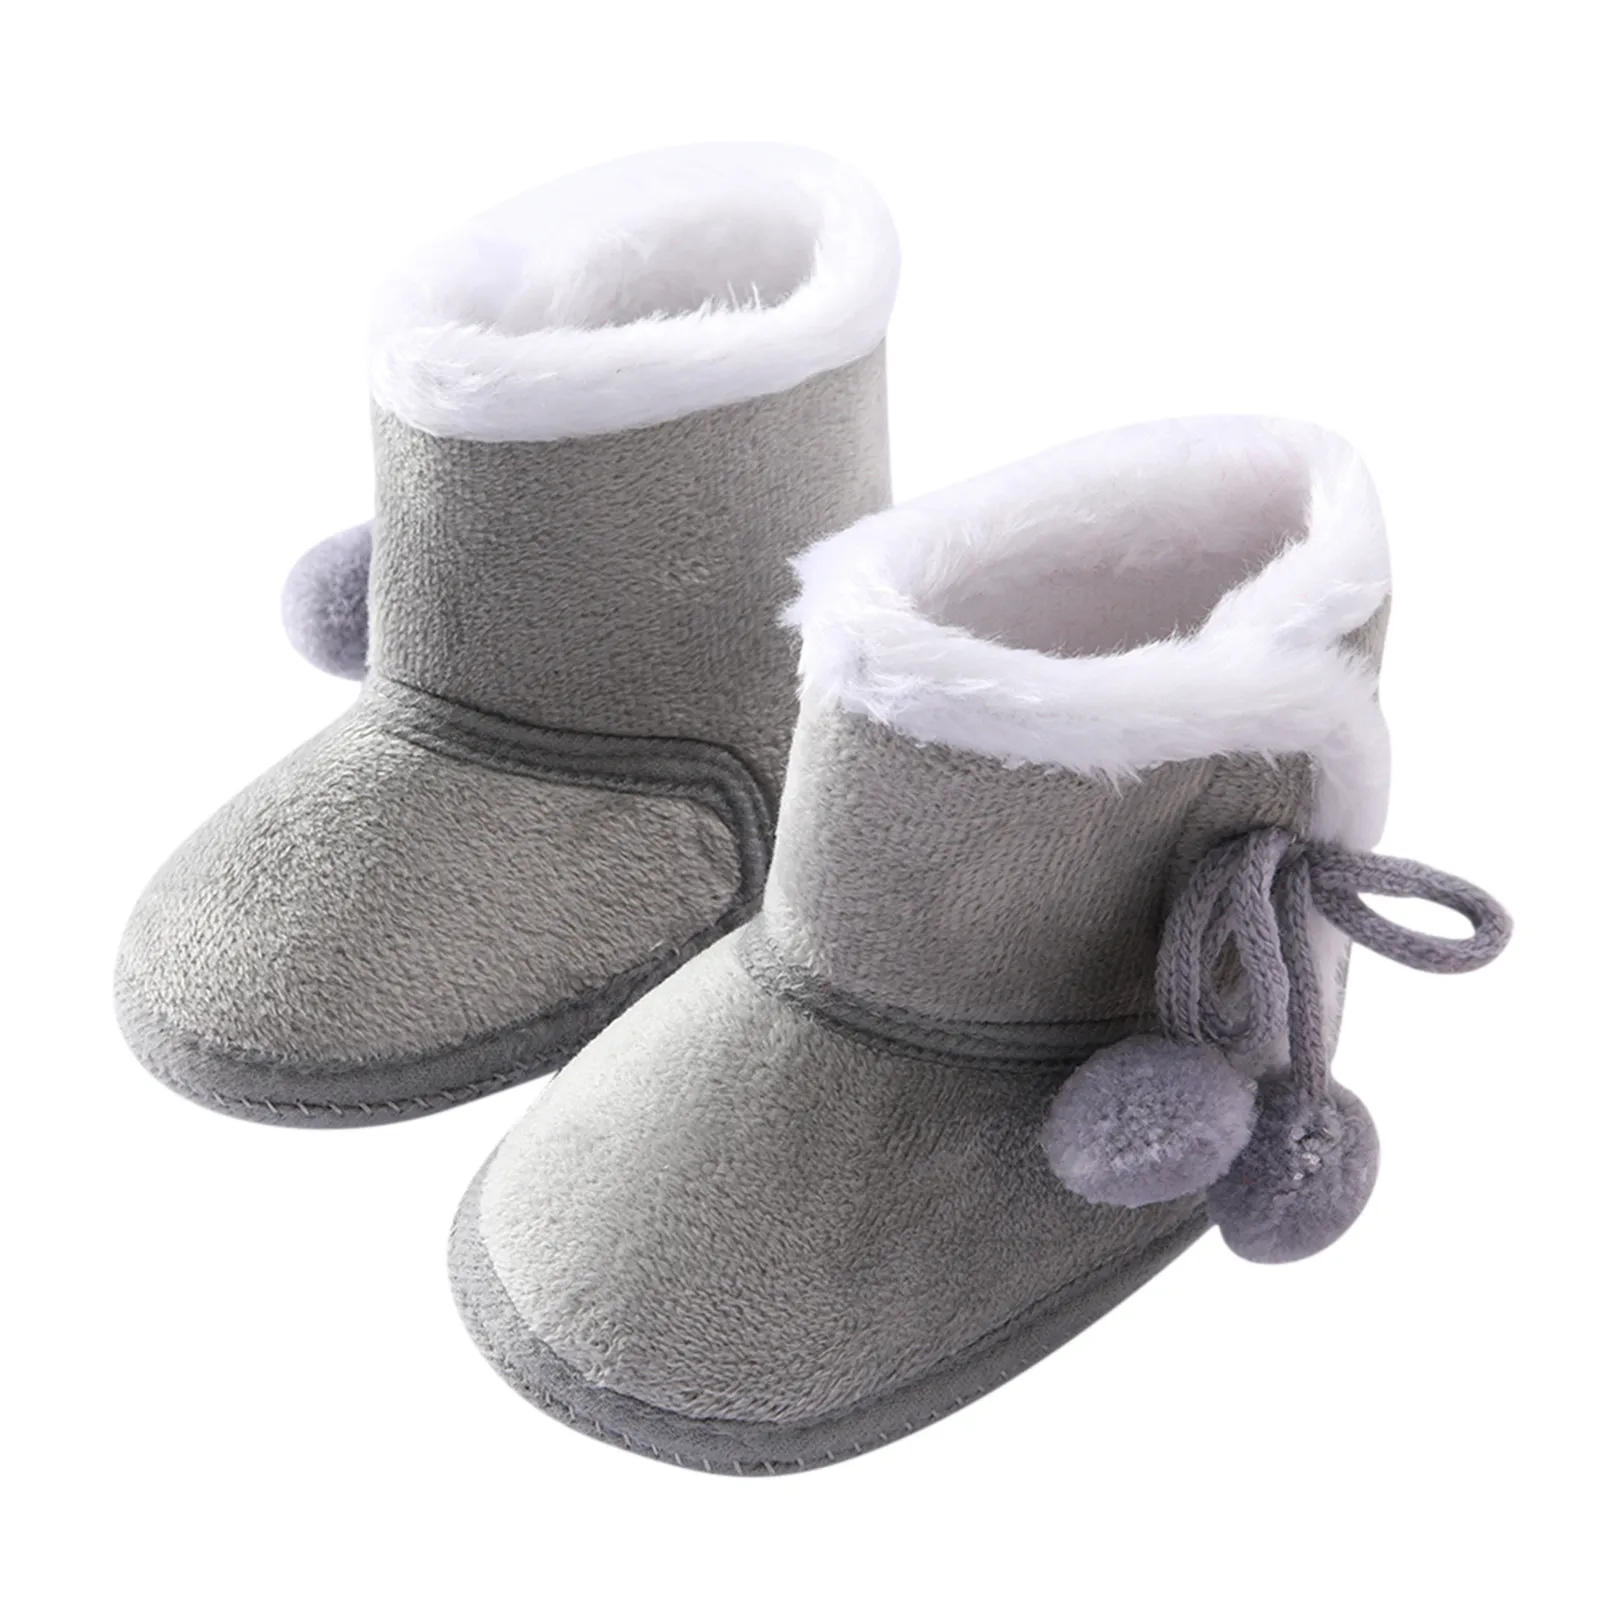 Lacofia Zapatos de calcetín de bebé Invierno Botas Suave de Suela Blanda para bebé niño o niña 